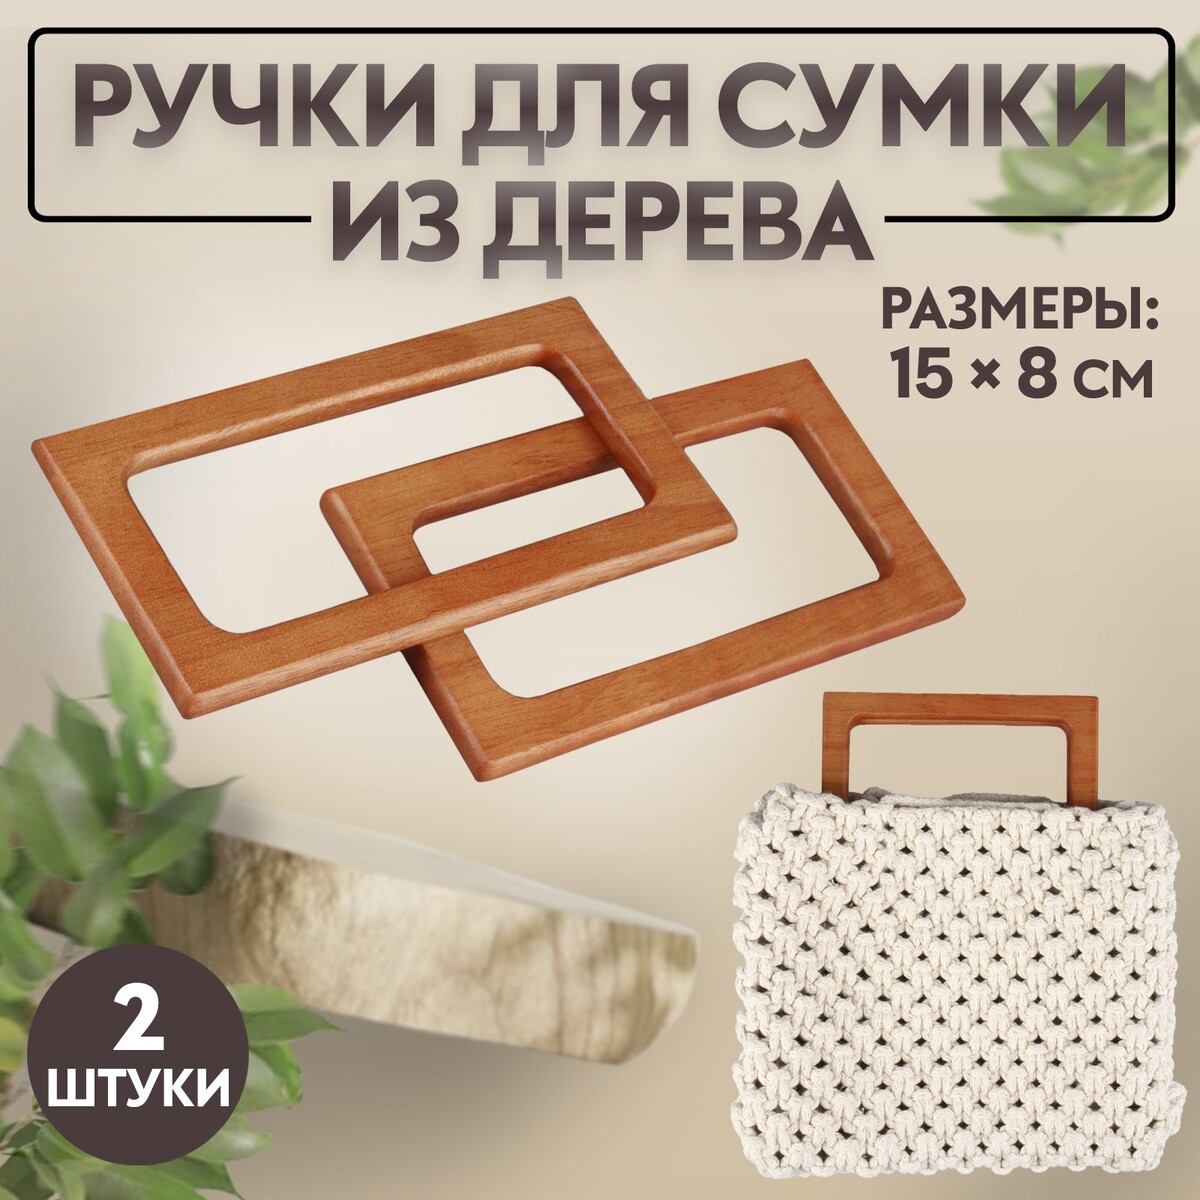 Ручки для сумки деревянные, 15 × 8 см, 2 шт, цвет светло-коричневый мопс светло коричневый 13 см игрушка мягкая